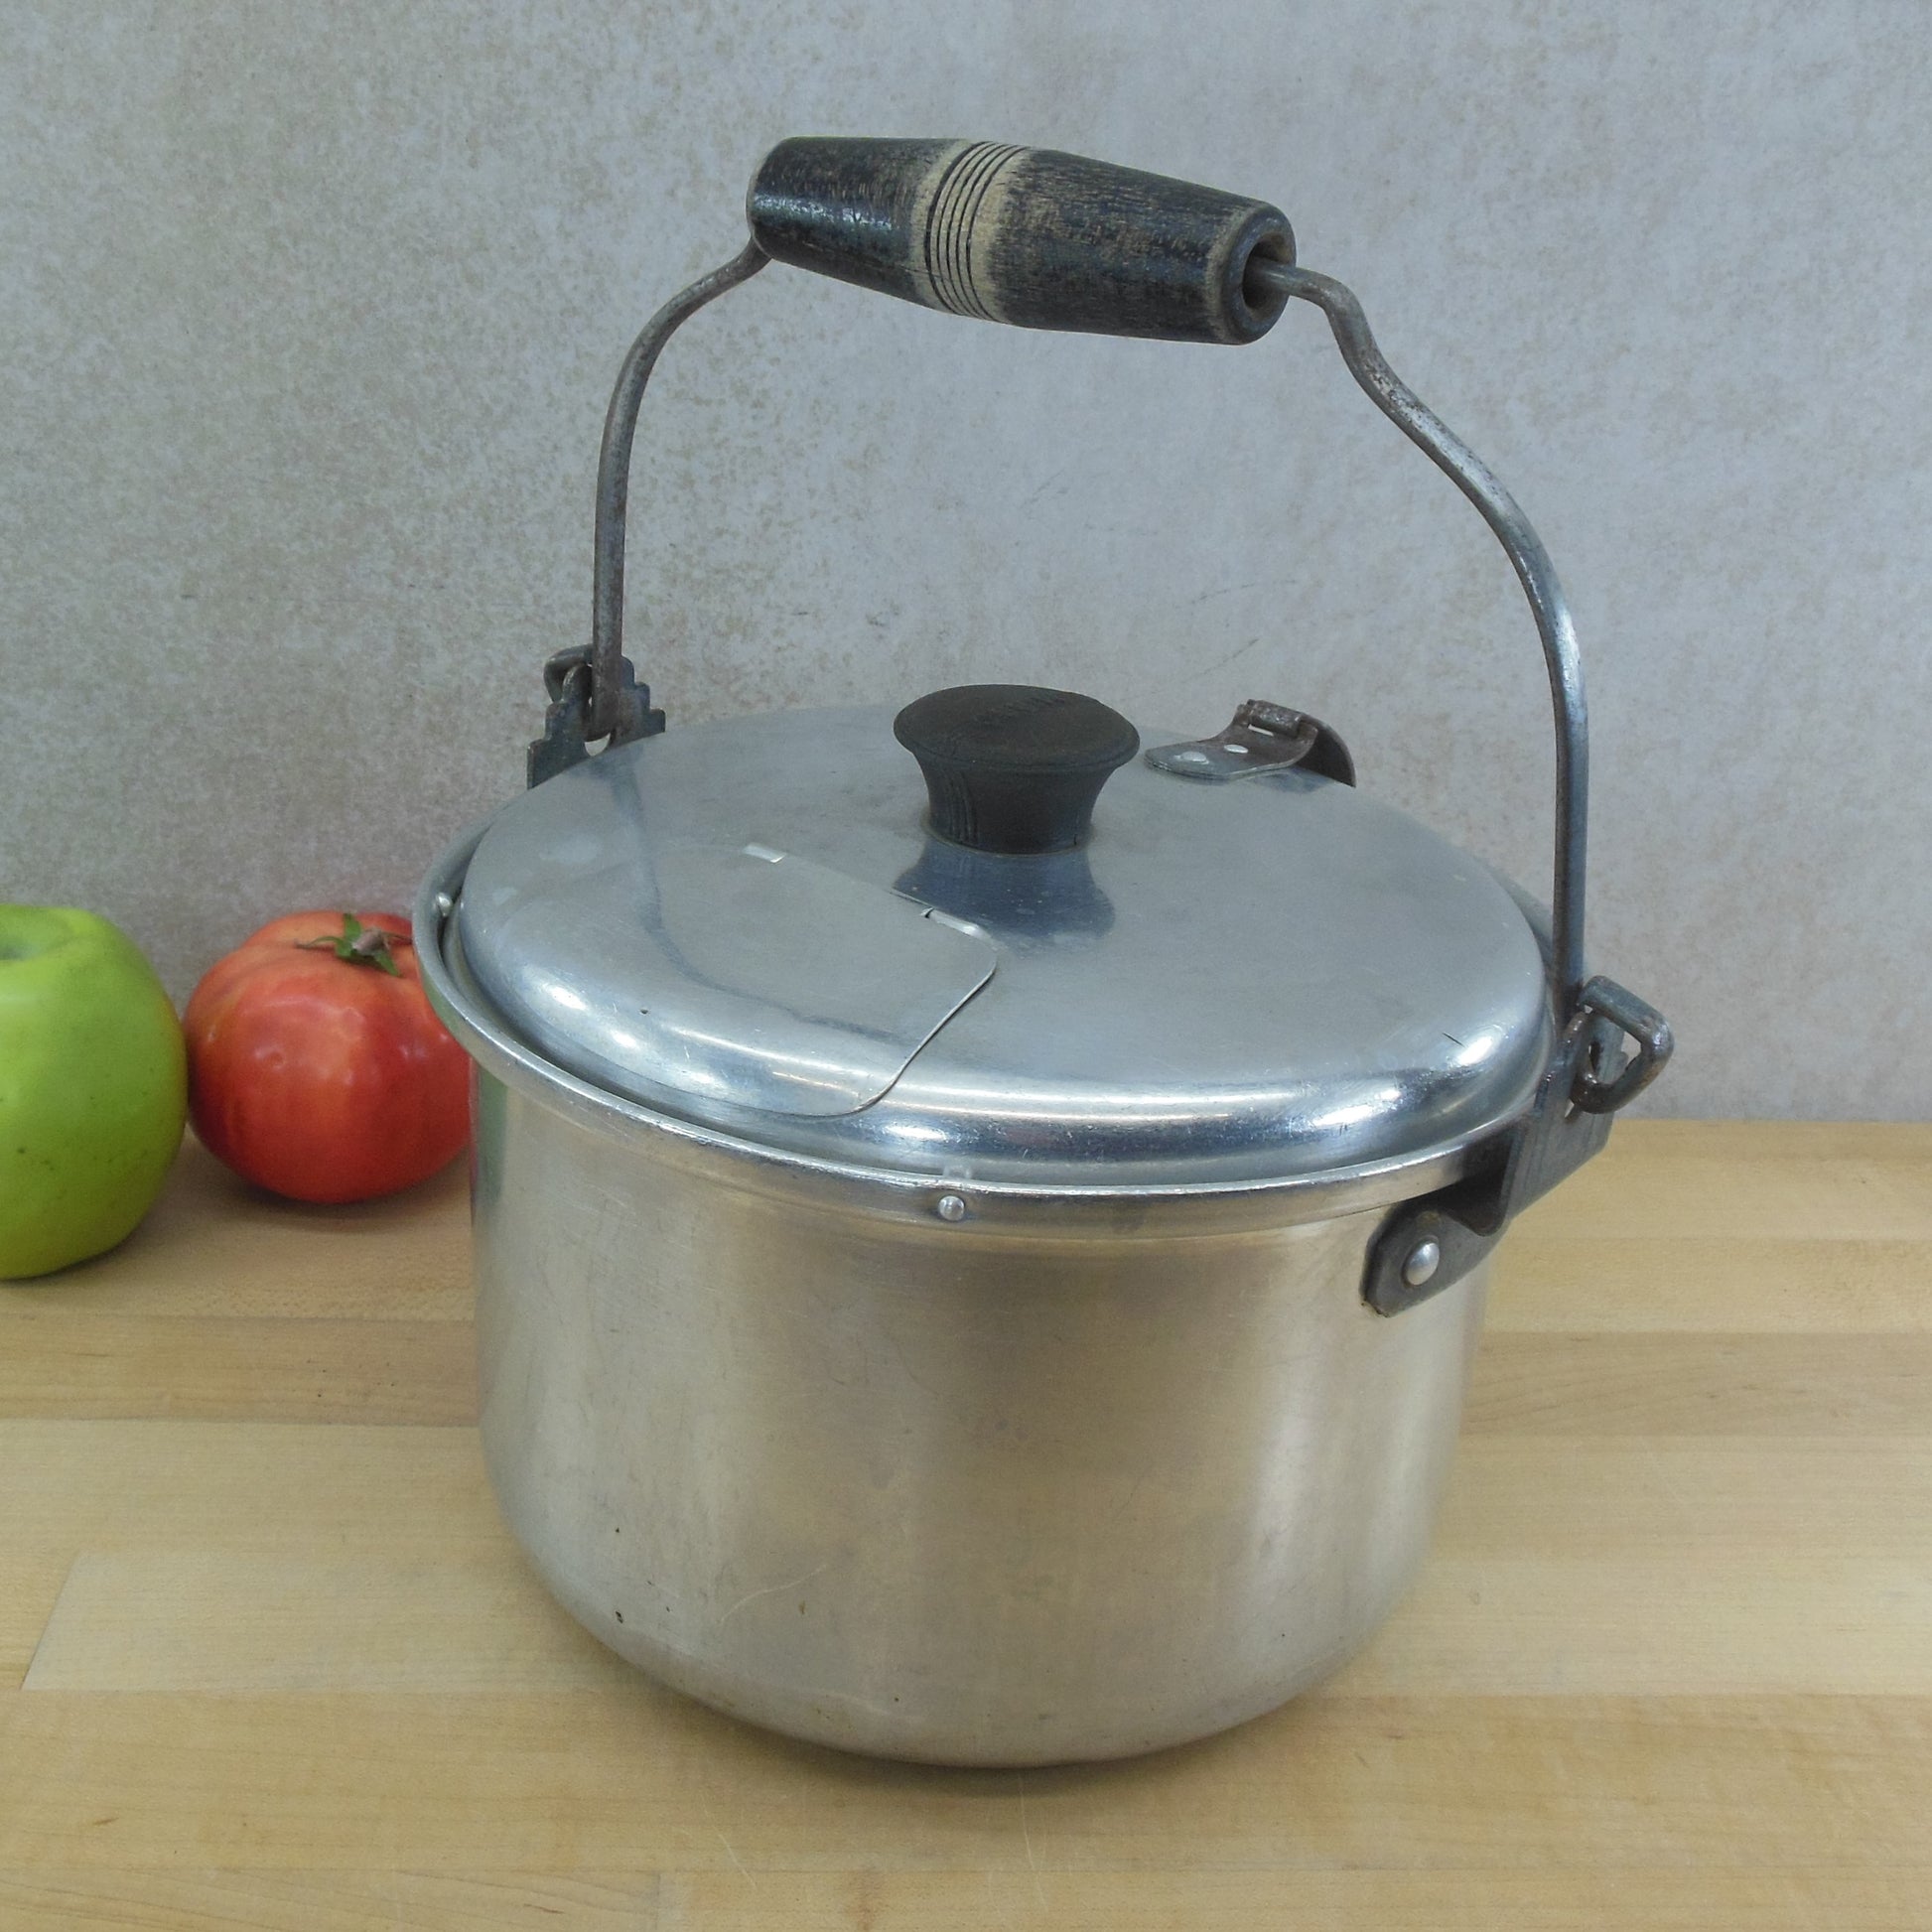 Vintage Regal Ware Aluminum Double Boiler Pot - household items